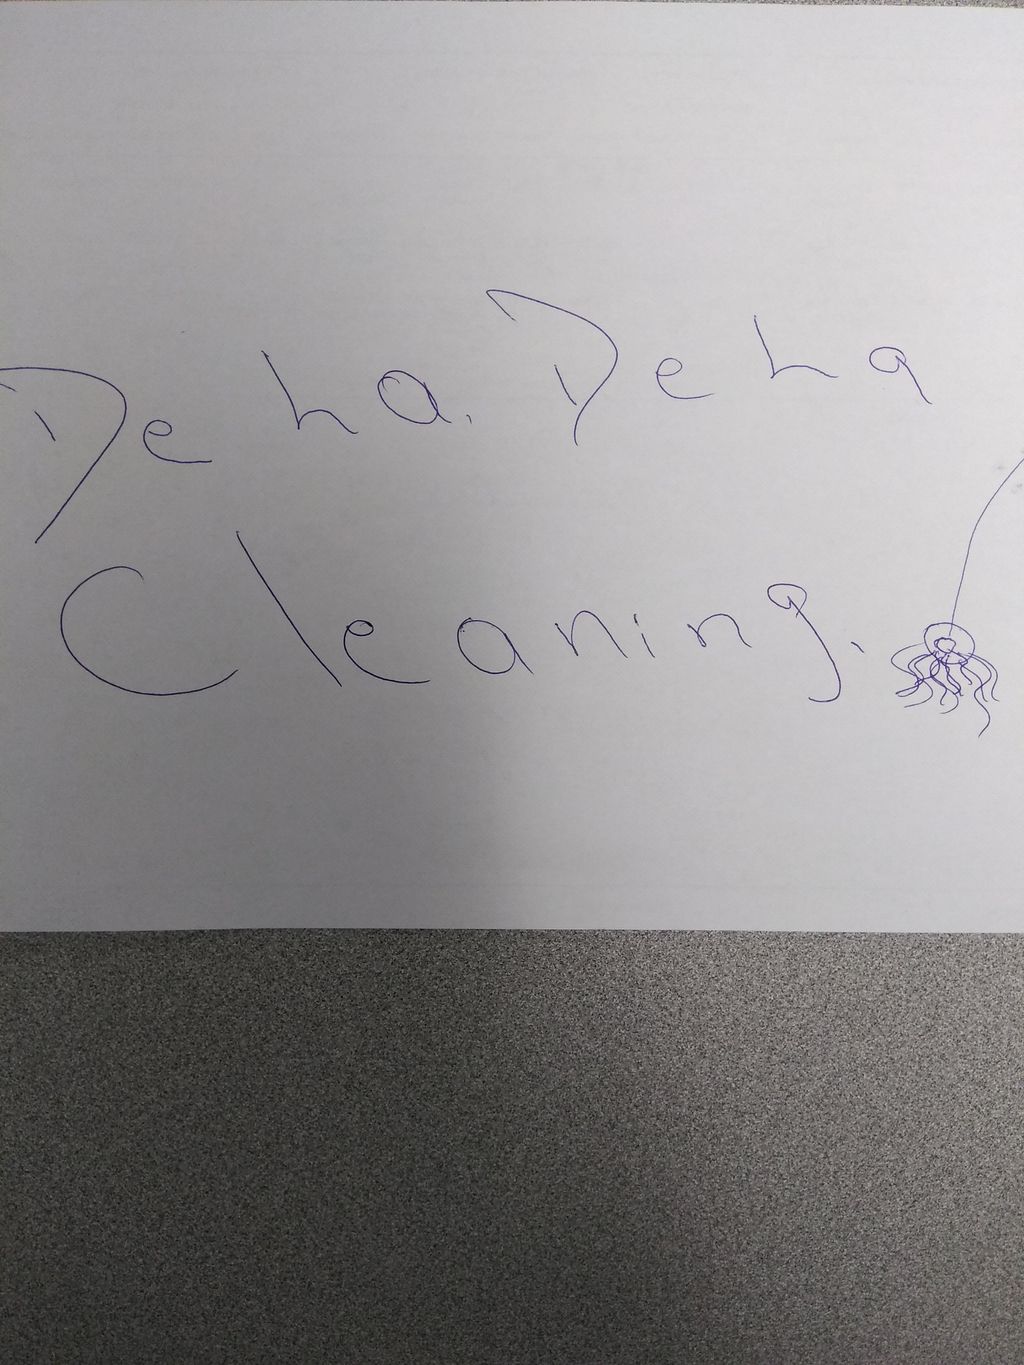 Dela Dela cleaning.